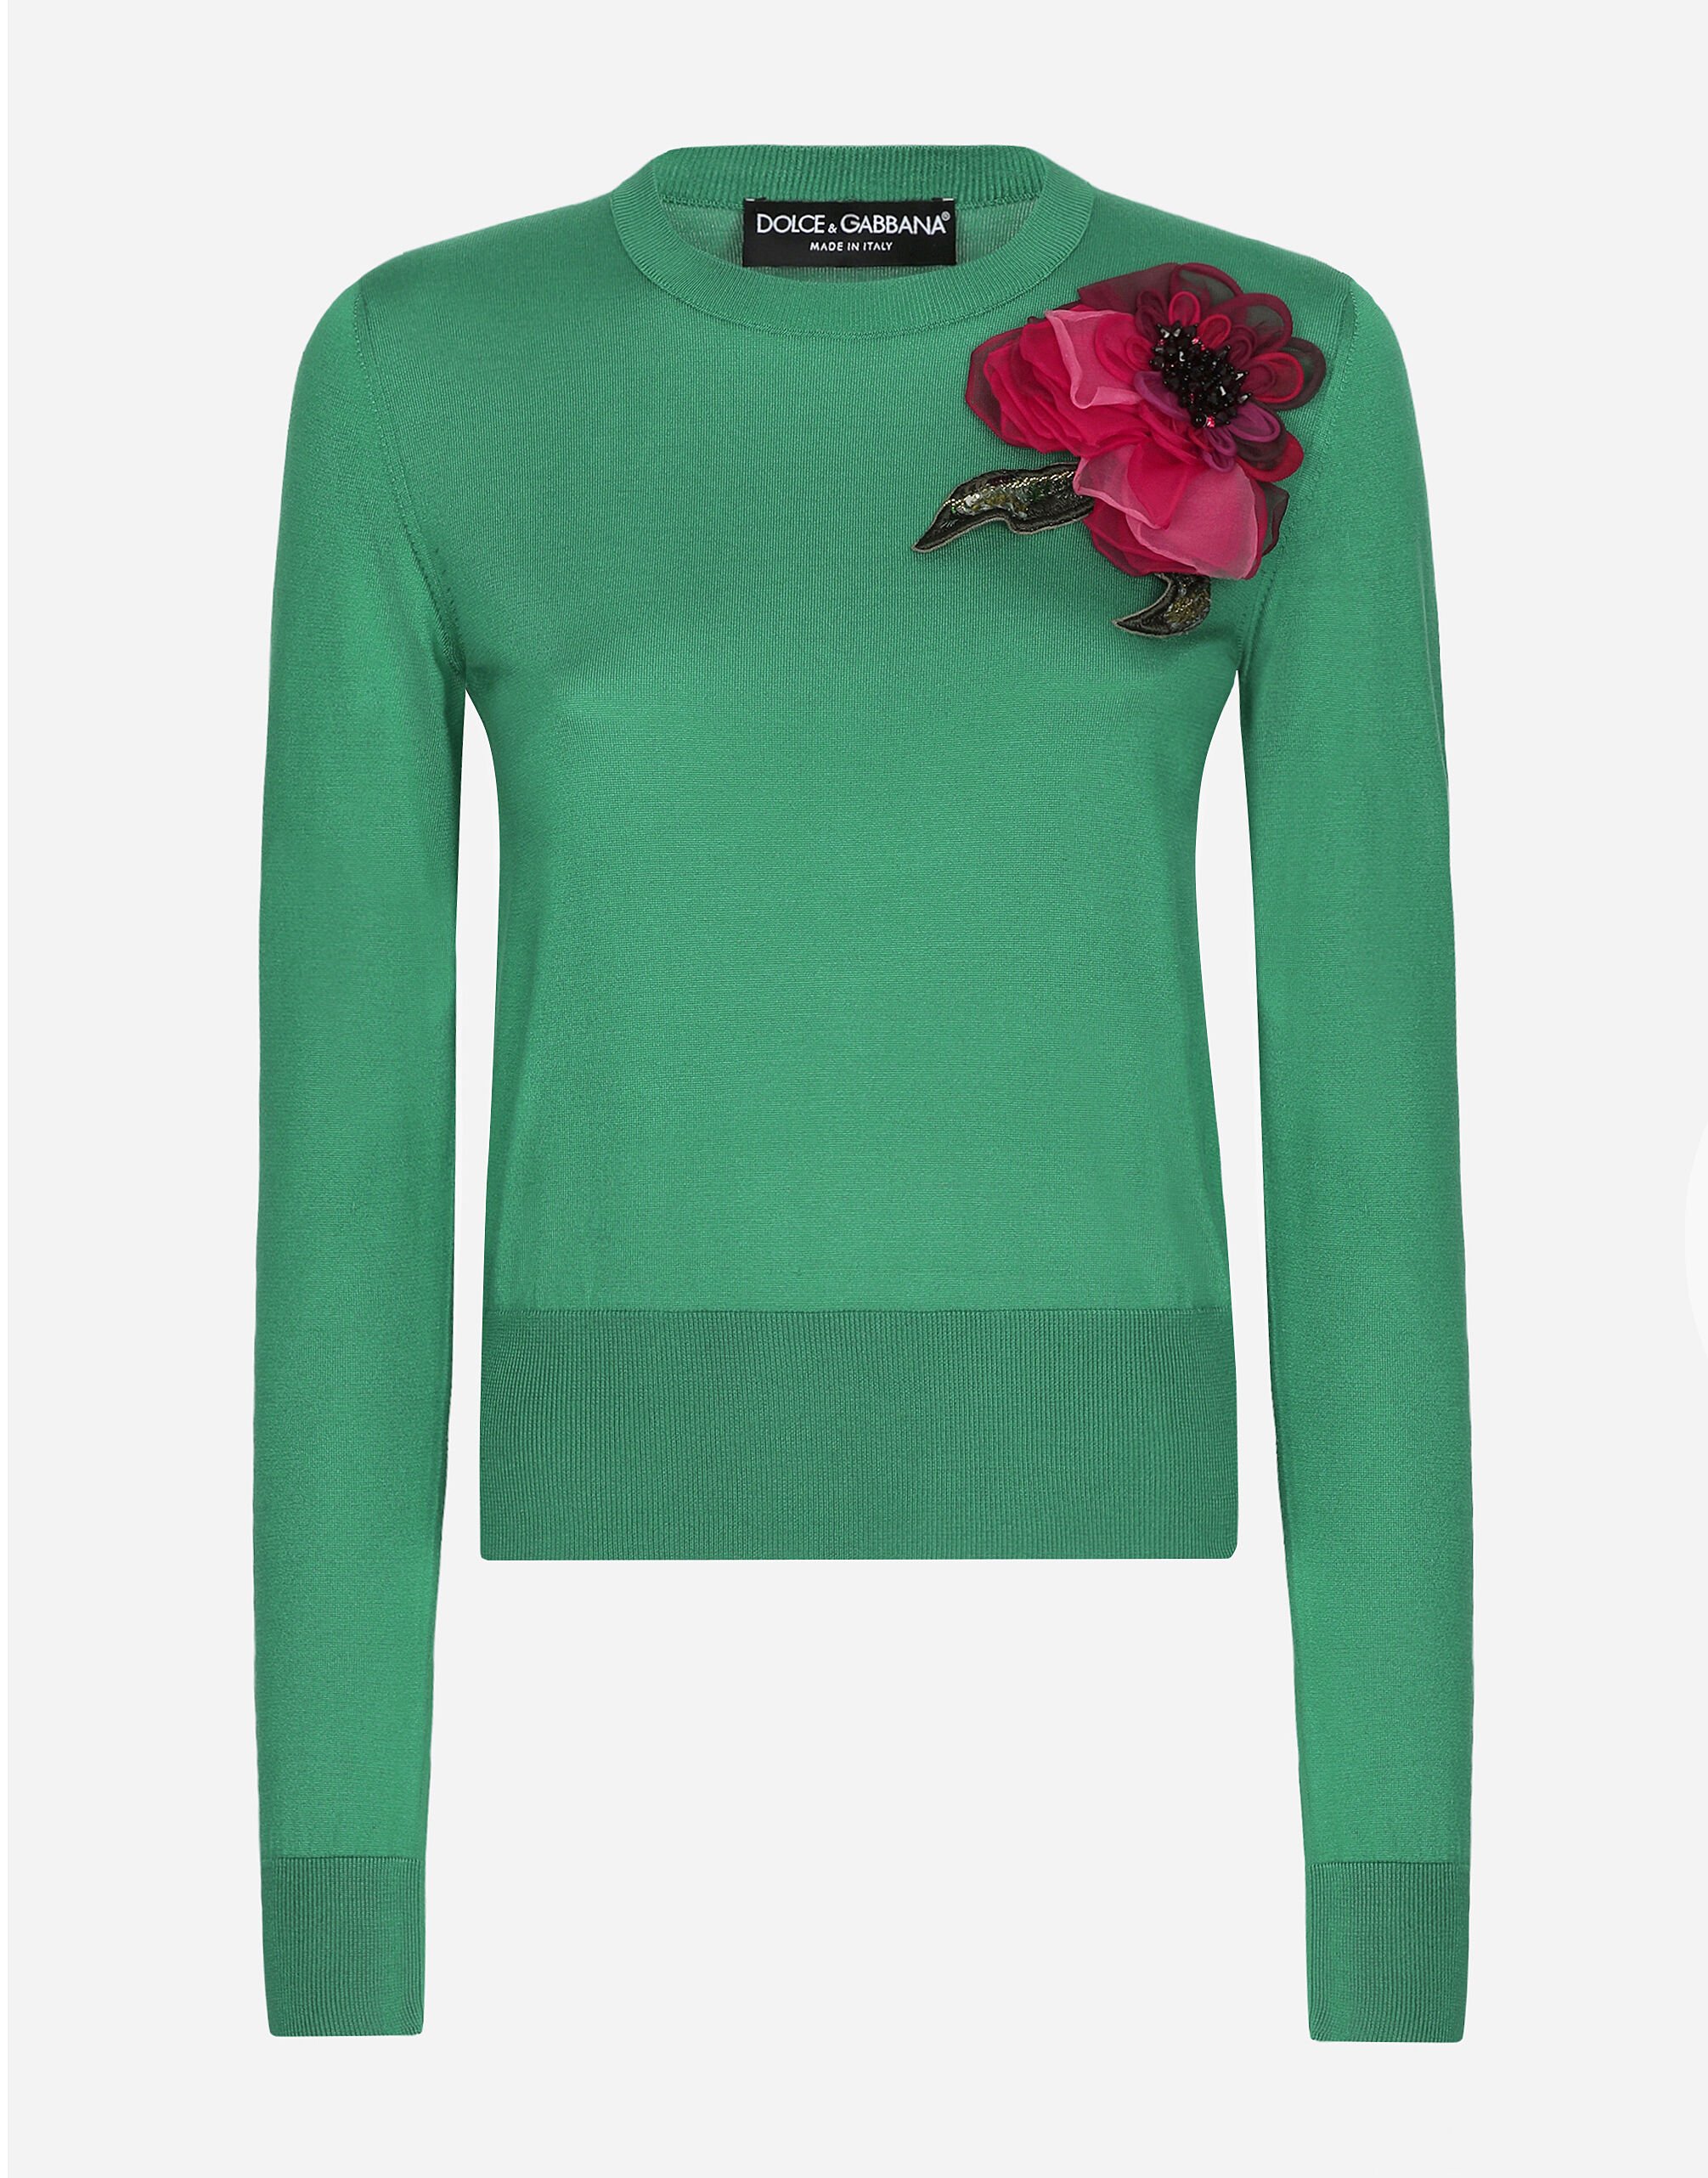 Dolce & Gabbana Maglia in seta con applicazione fiore Rosa FXV07ZJBSHX